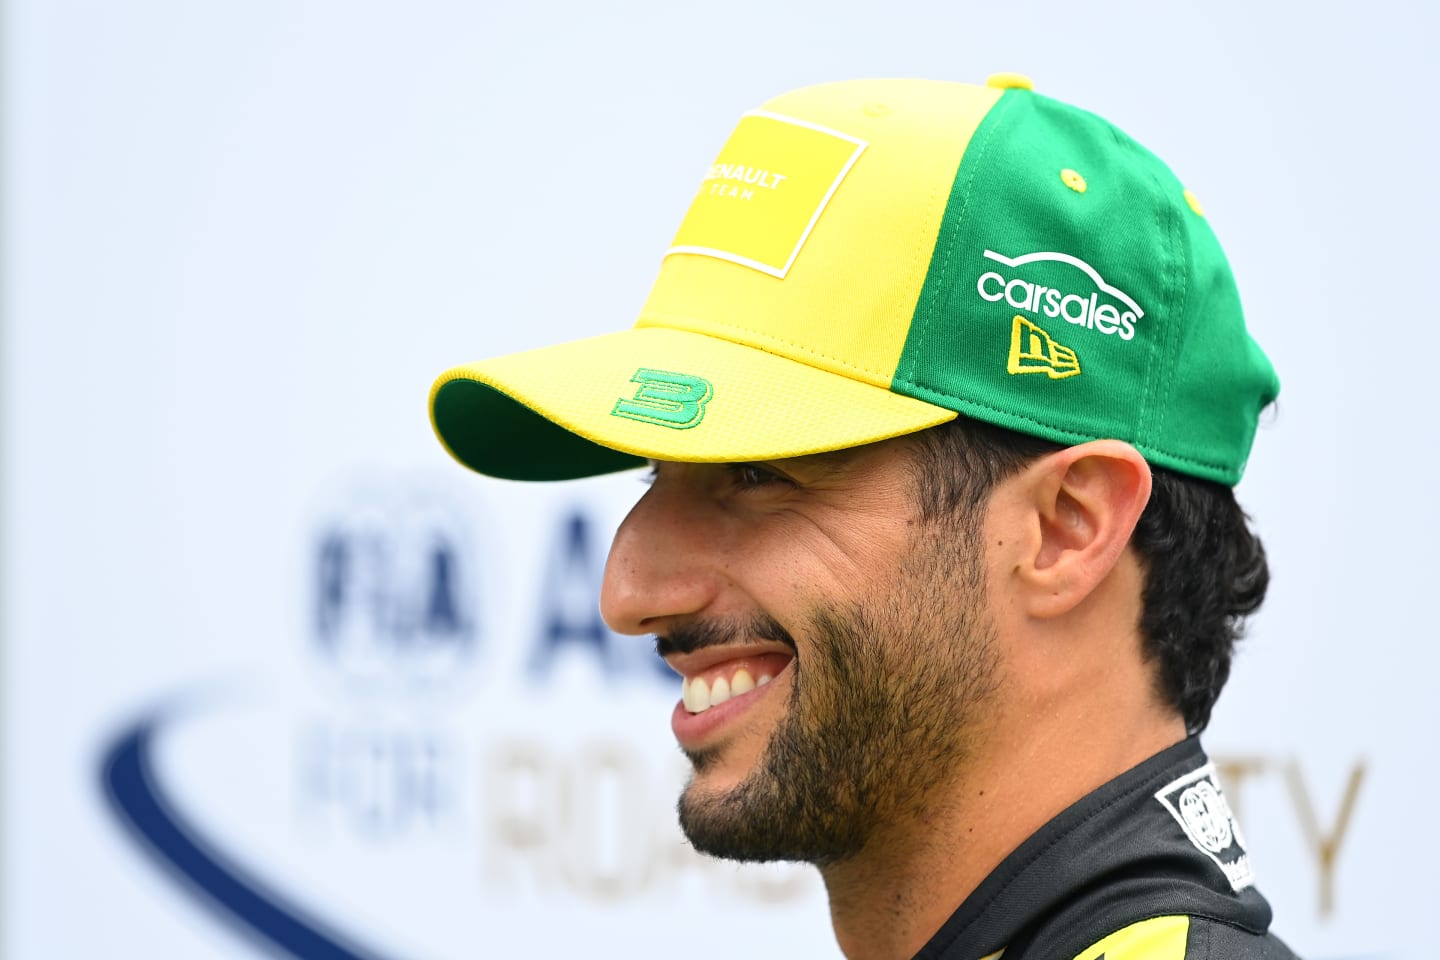 MELBOURNE, AUSTRALIA - MARCH 12: Daniel Ricciardo of Australia and Renault Sport F1 looks on in the